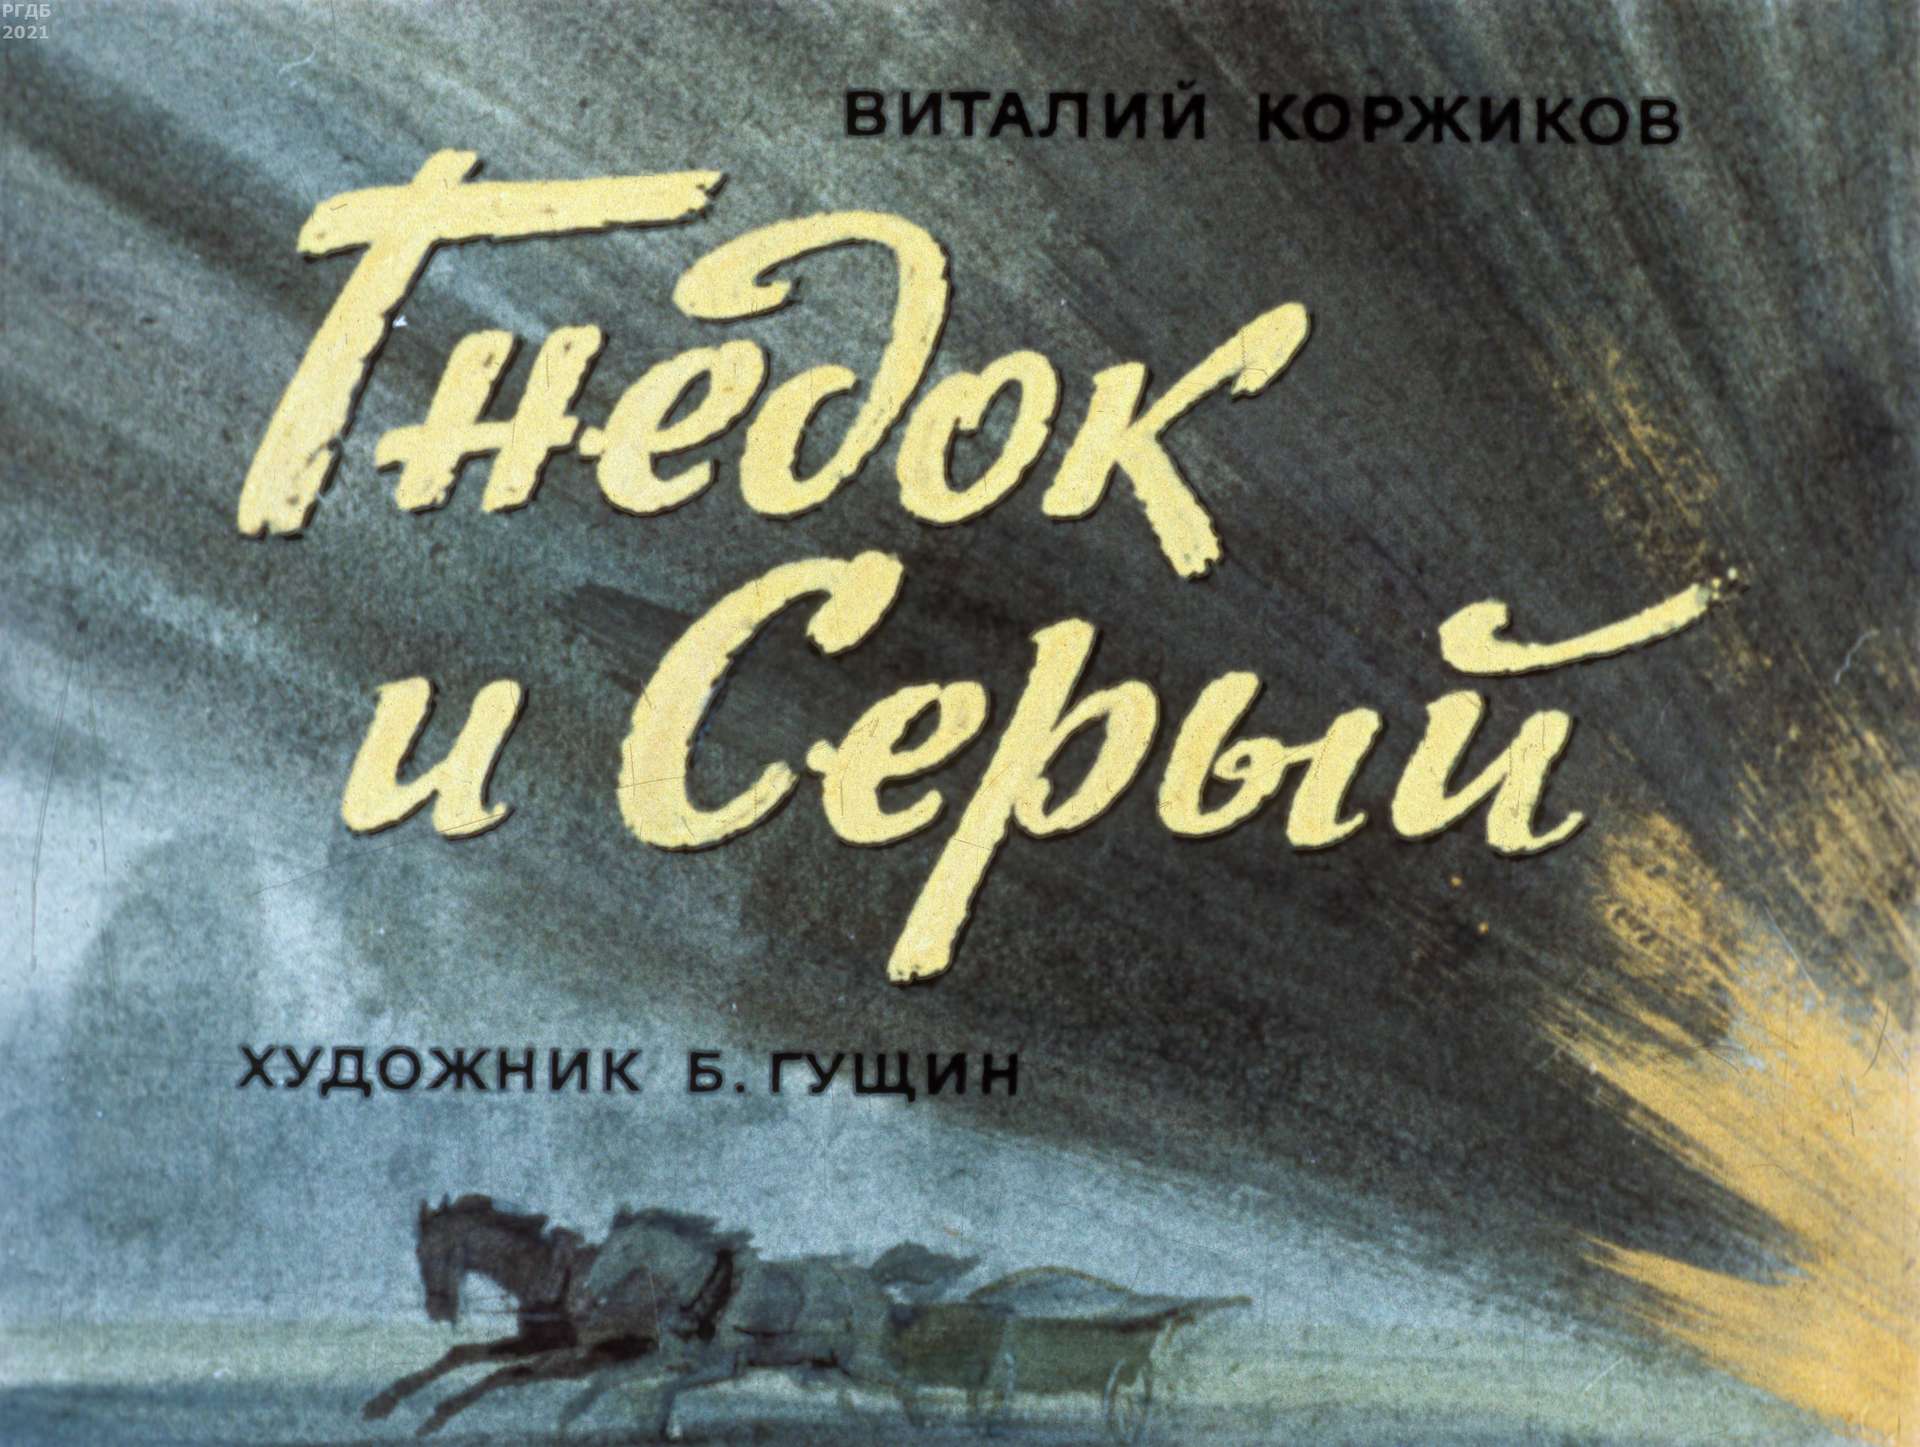 Коржиков Виталий Титович - Гнедок и Серый - 1976